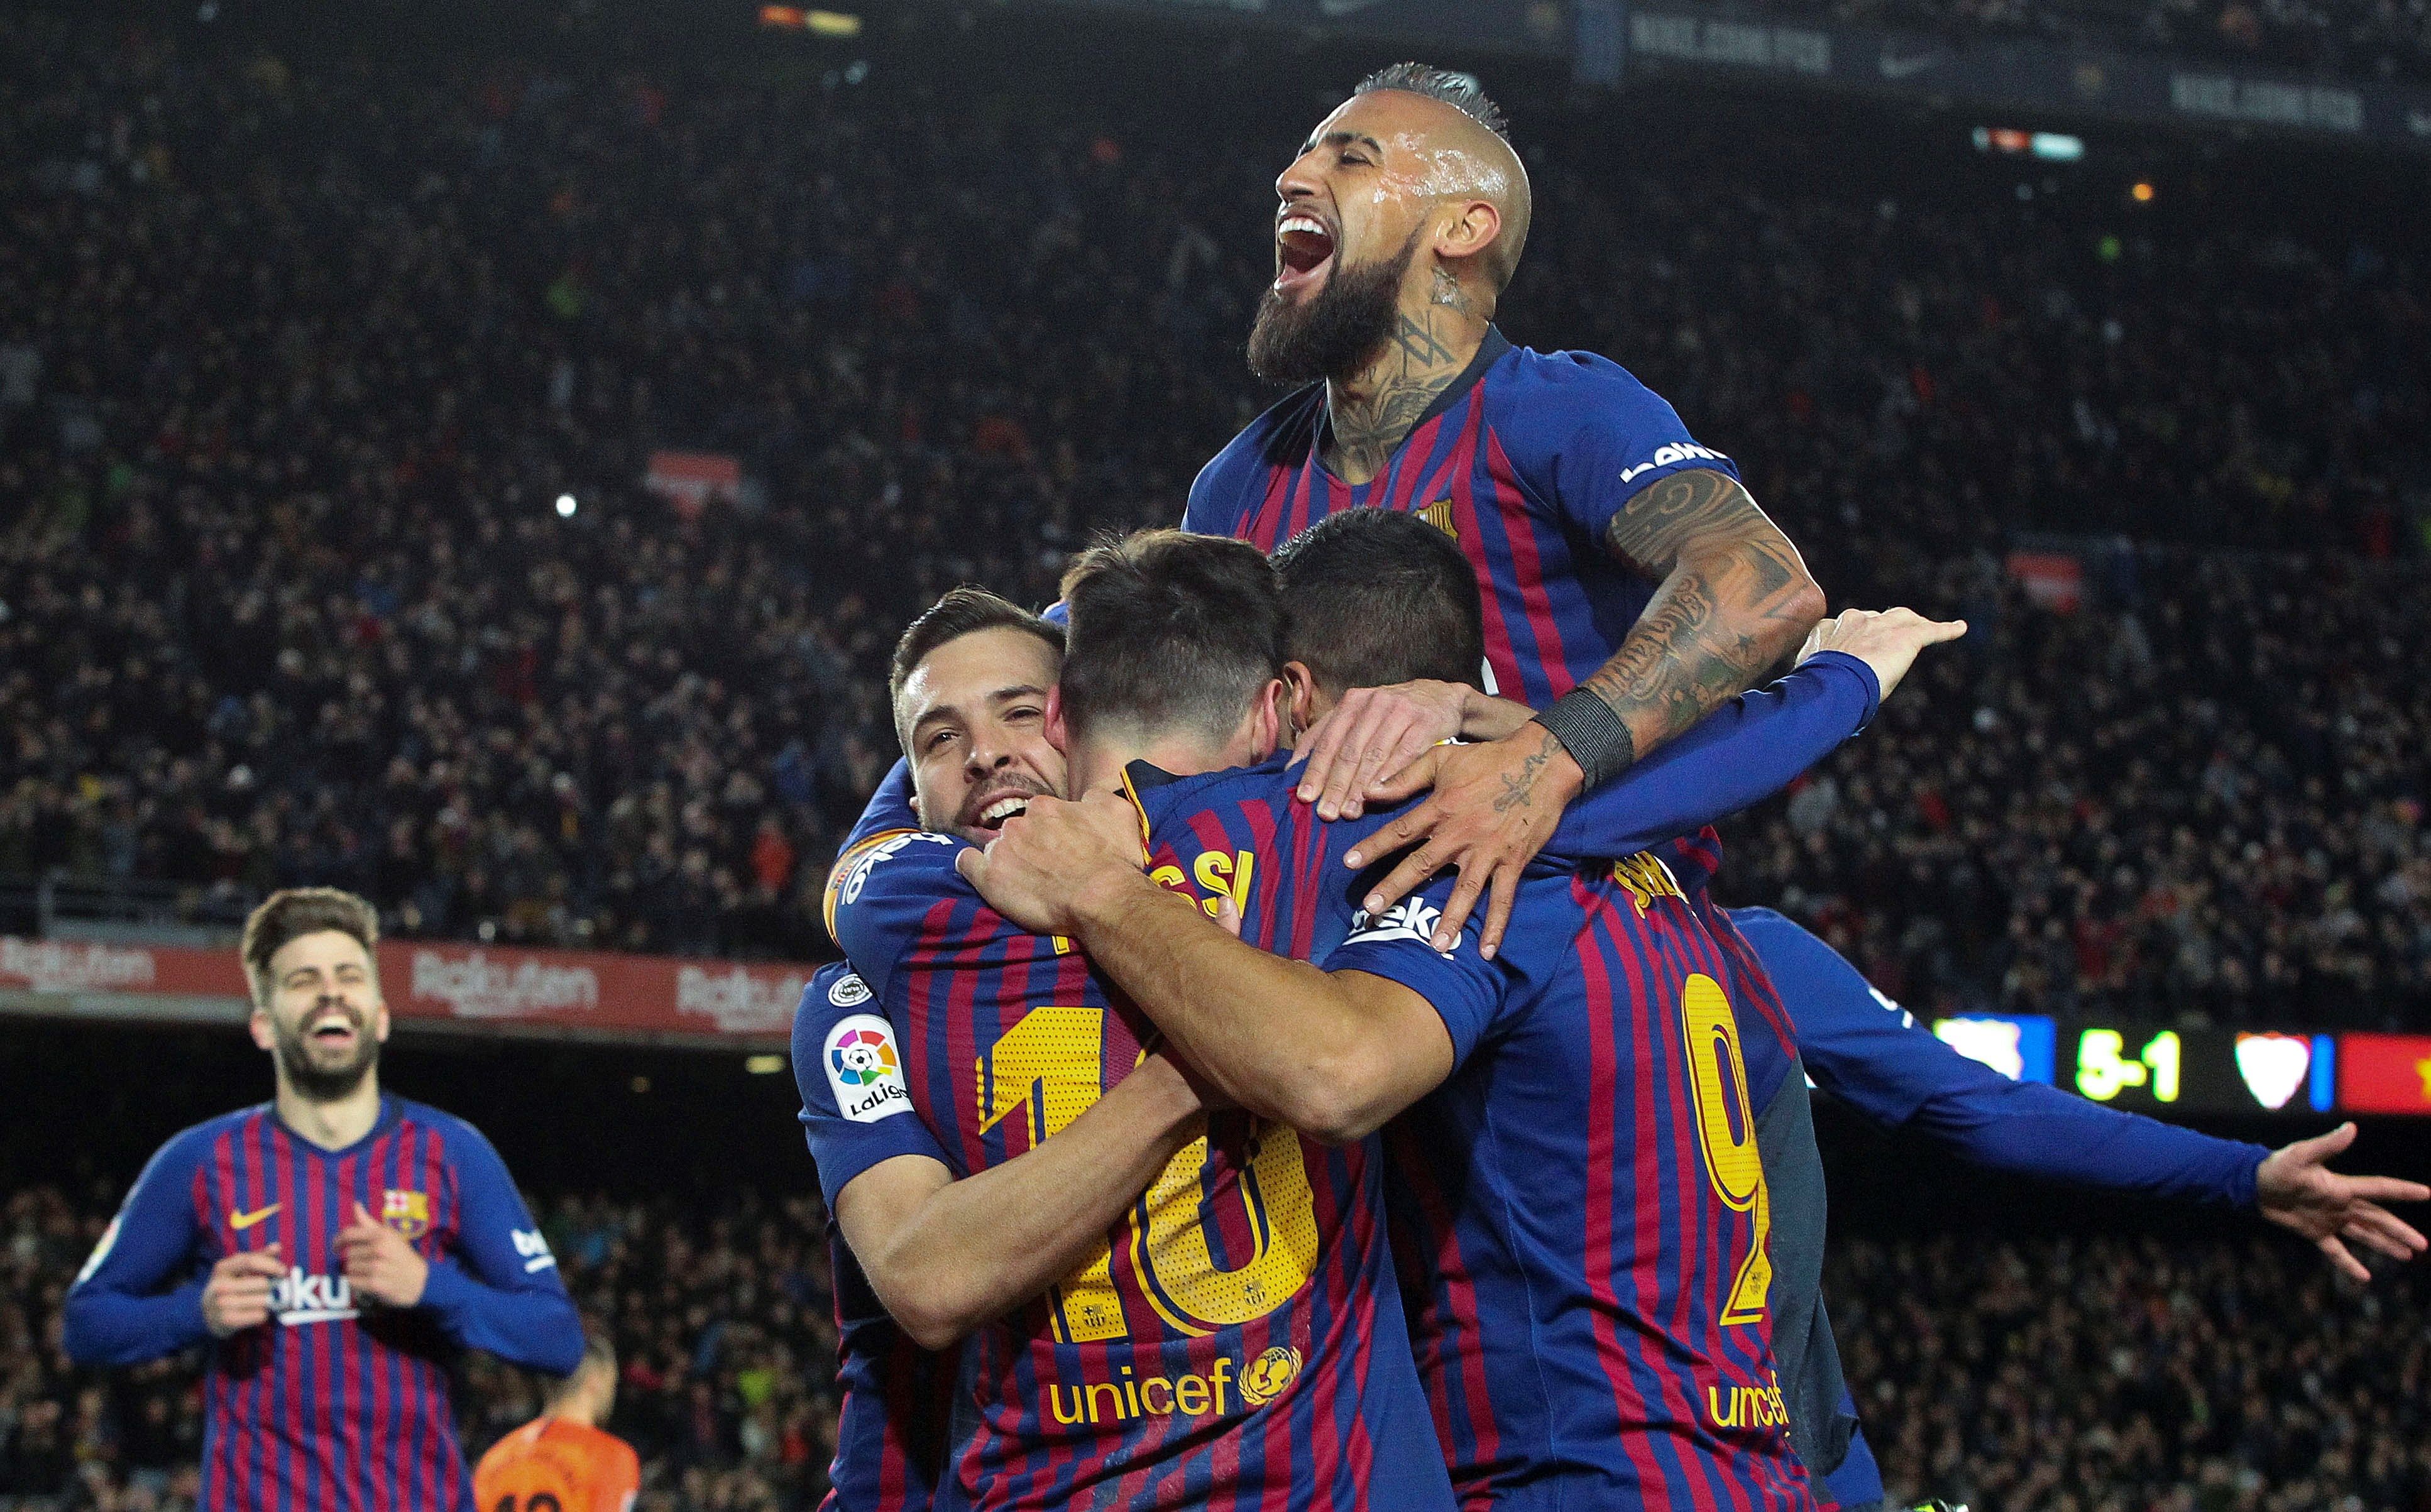 El Barça continua amb el seu idil·li a la Copa del Rei després de nou anys